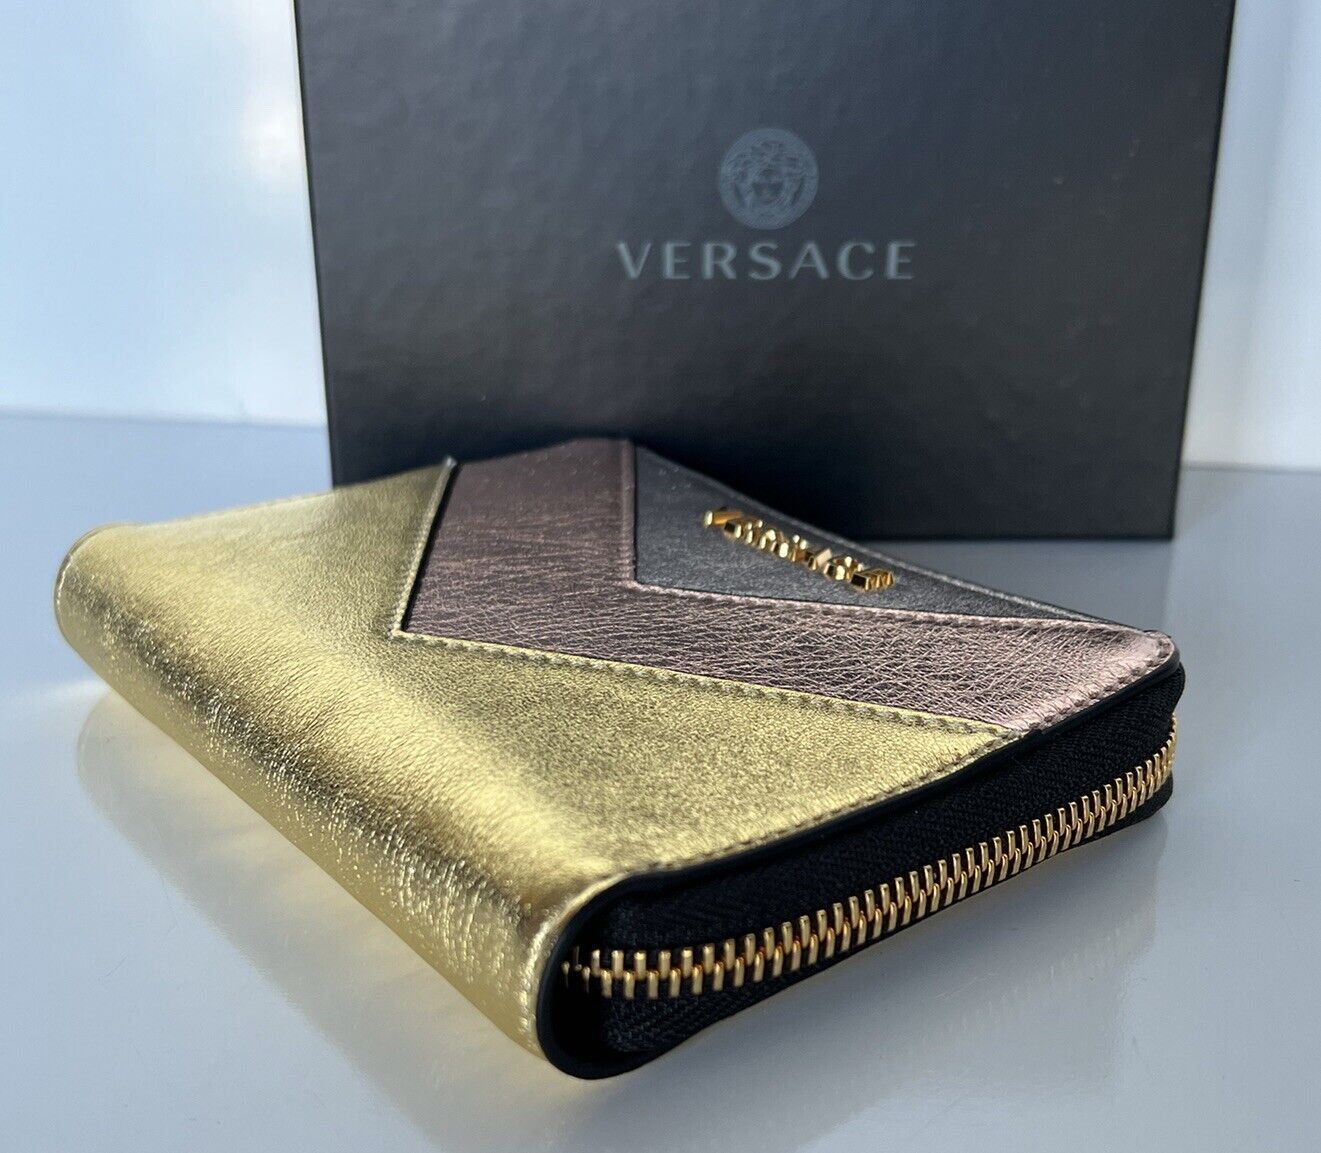 NWT Versace Кошелек среднего размера из телячьей кожи золотого/розового/серебристого цвета на молнии, производство Италия 593 